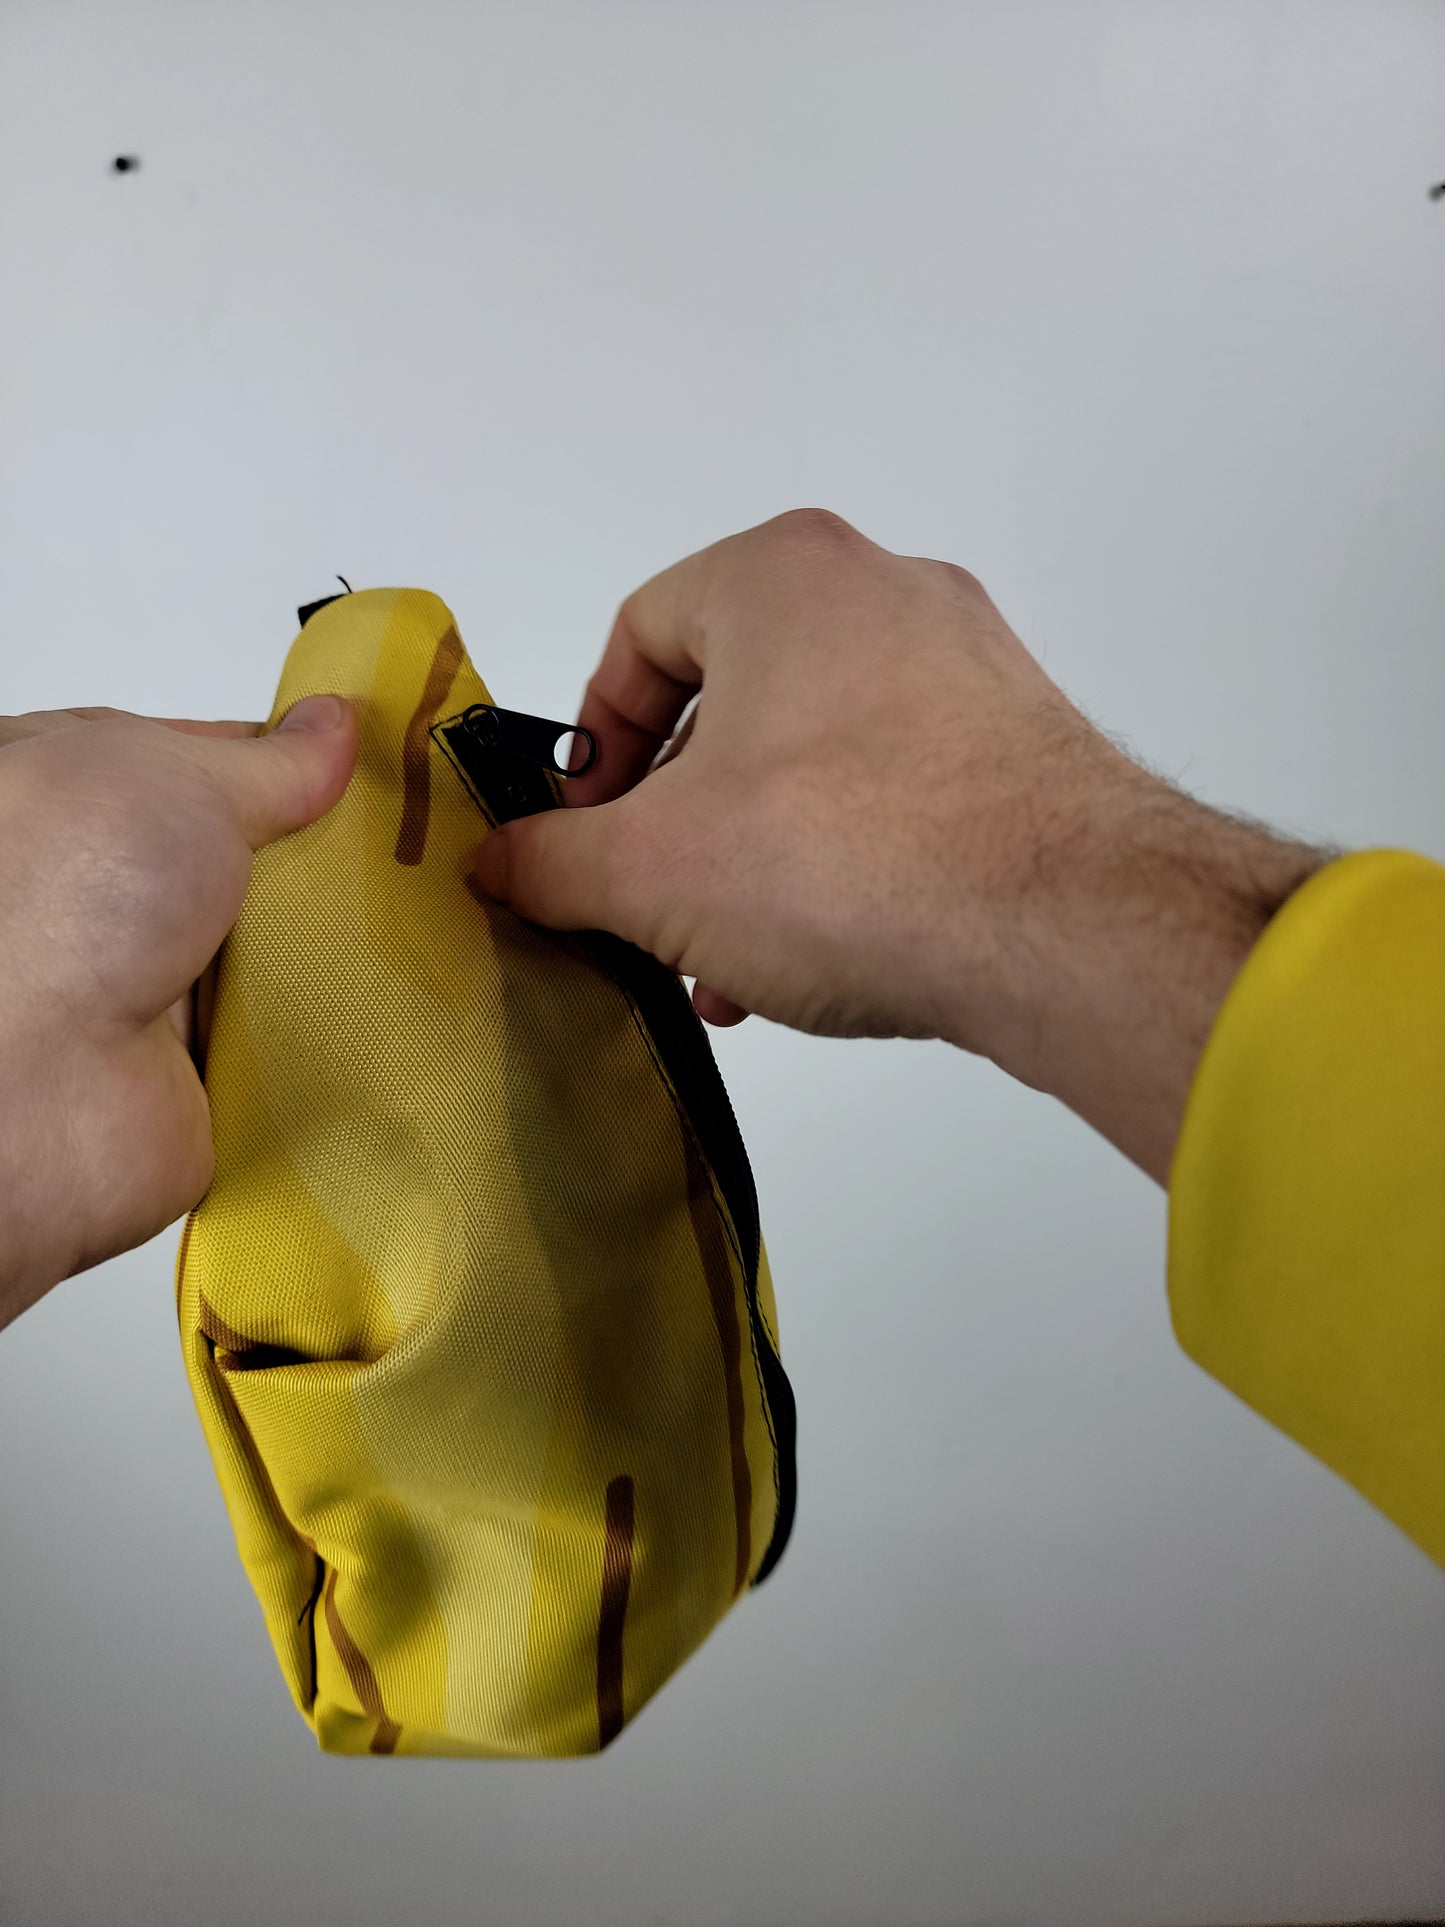 Banana Fanny Pack